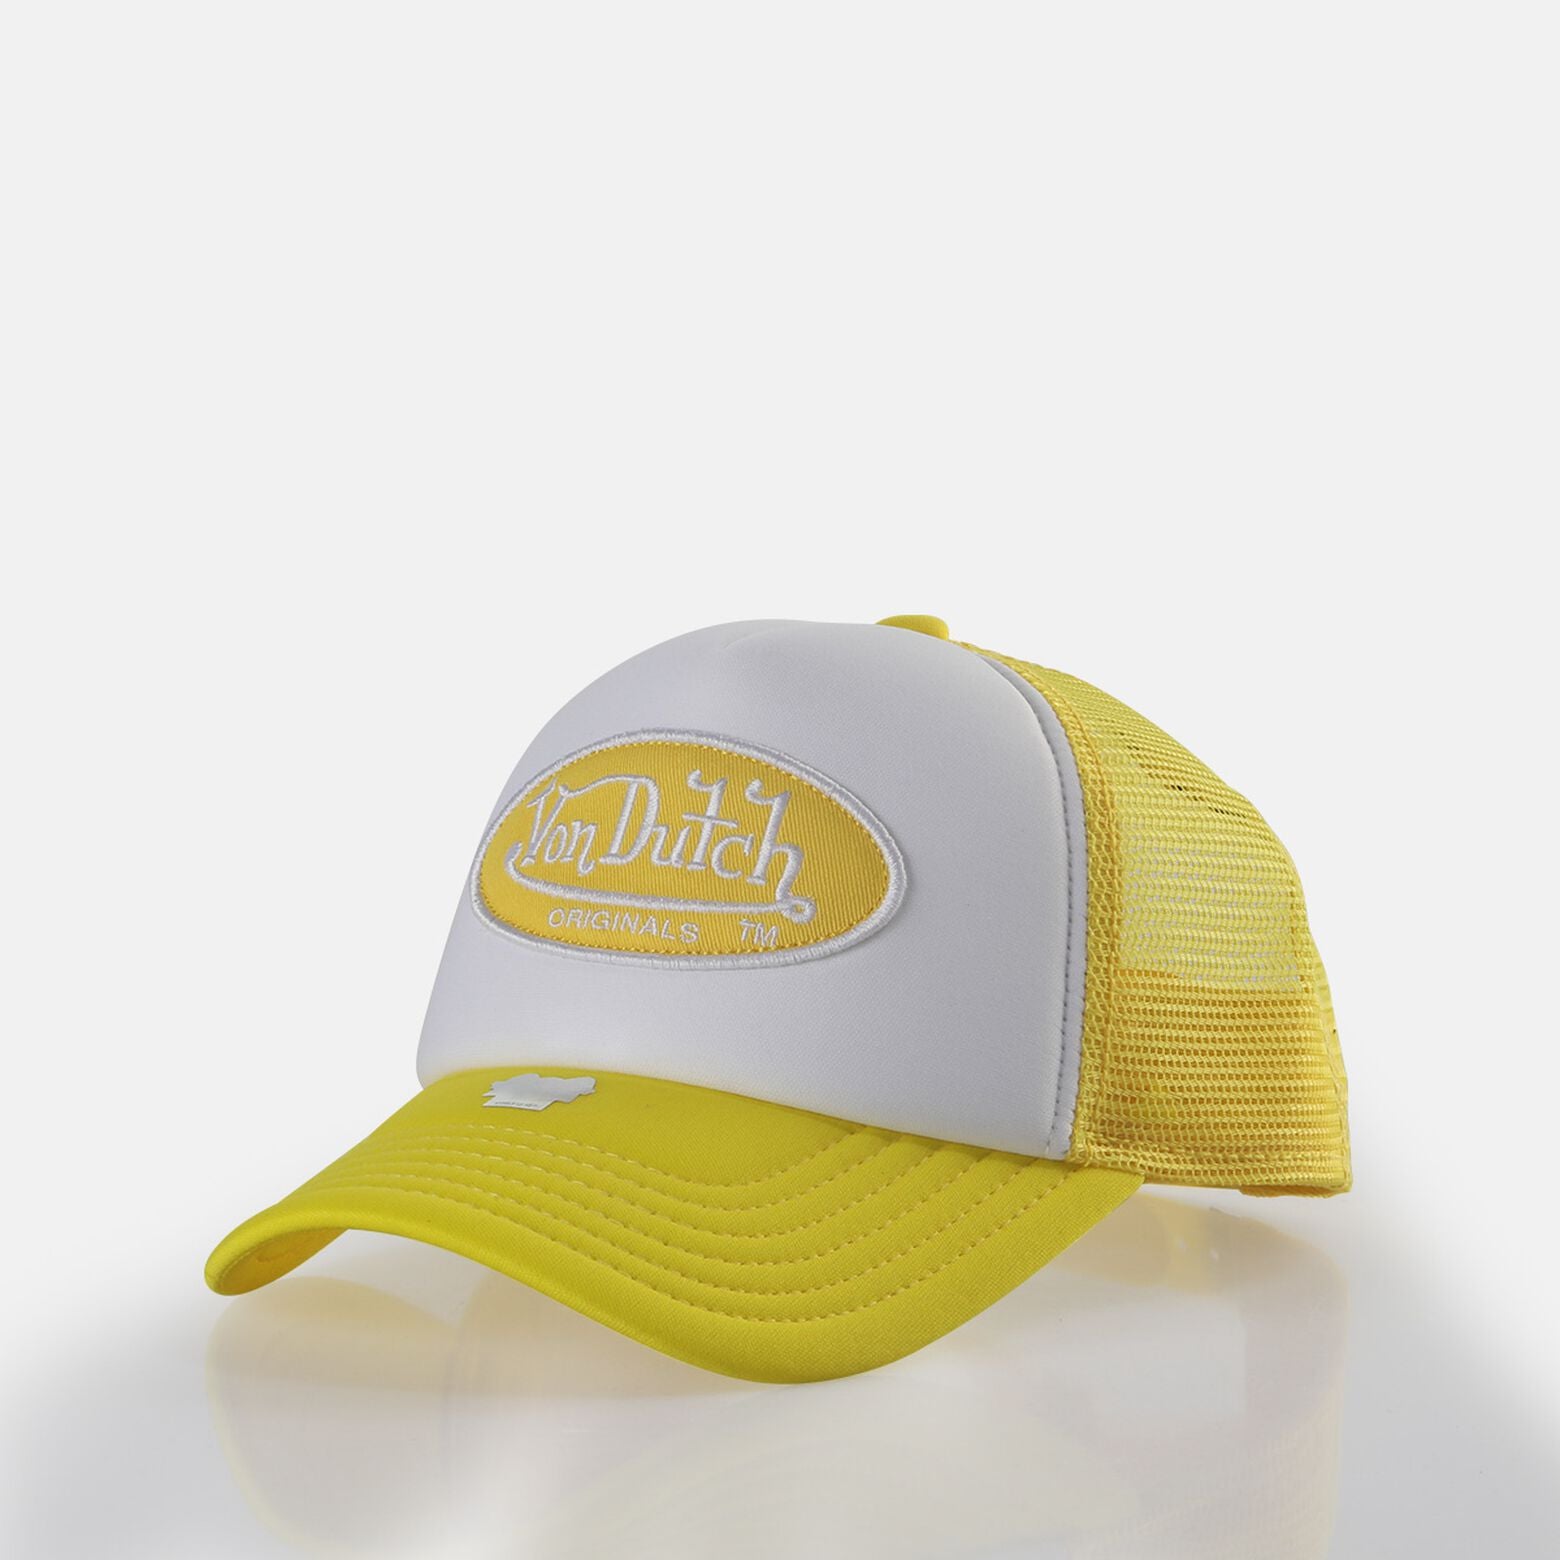 Von Dutch Tampa Trucker Cap - White/Yellow - Headz Up 